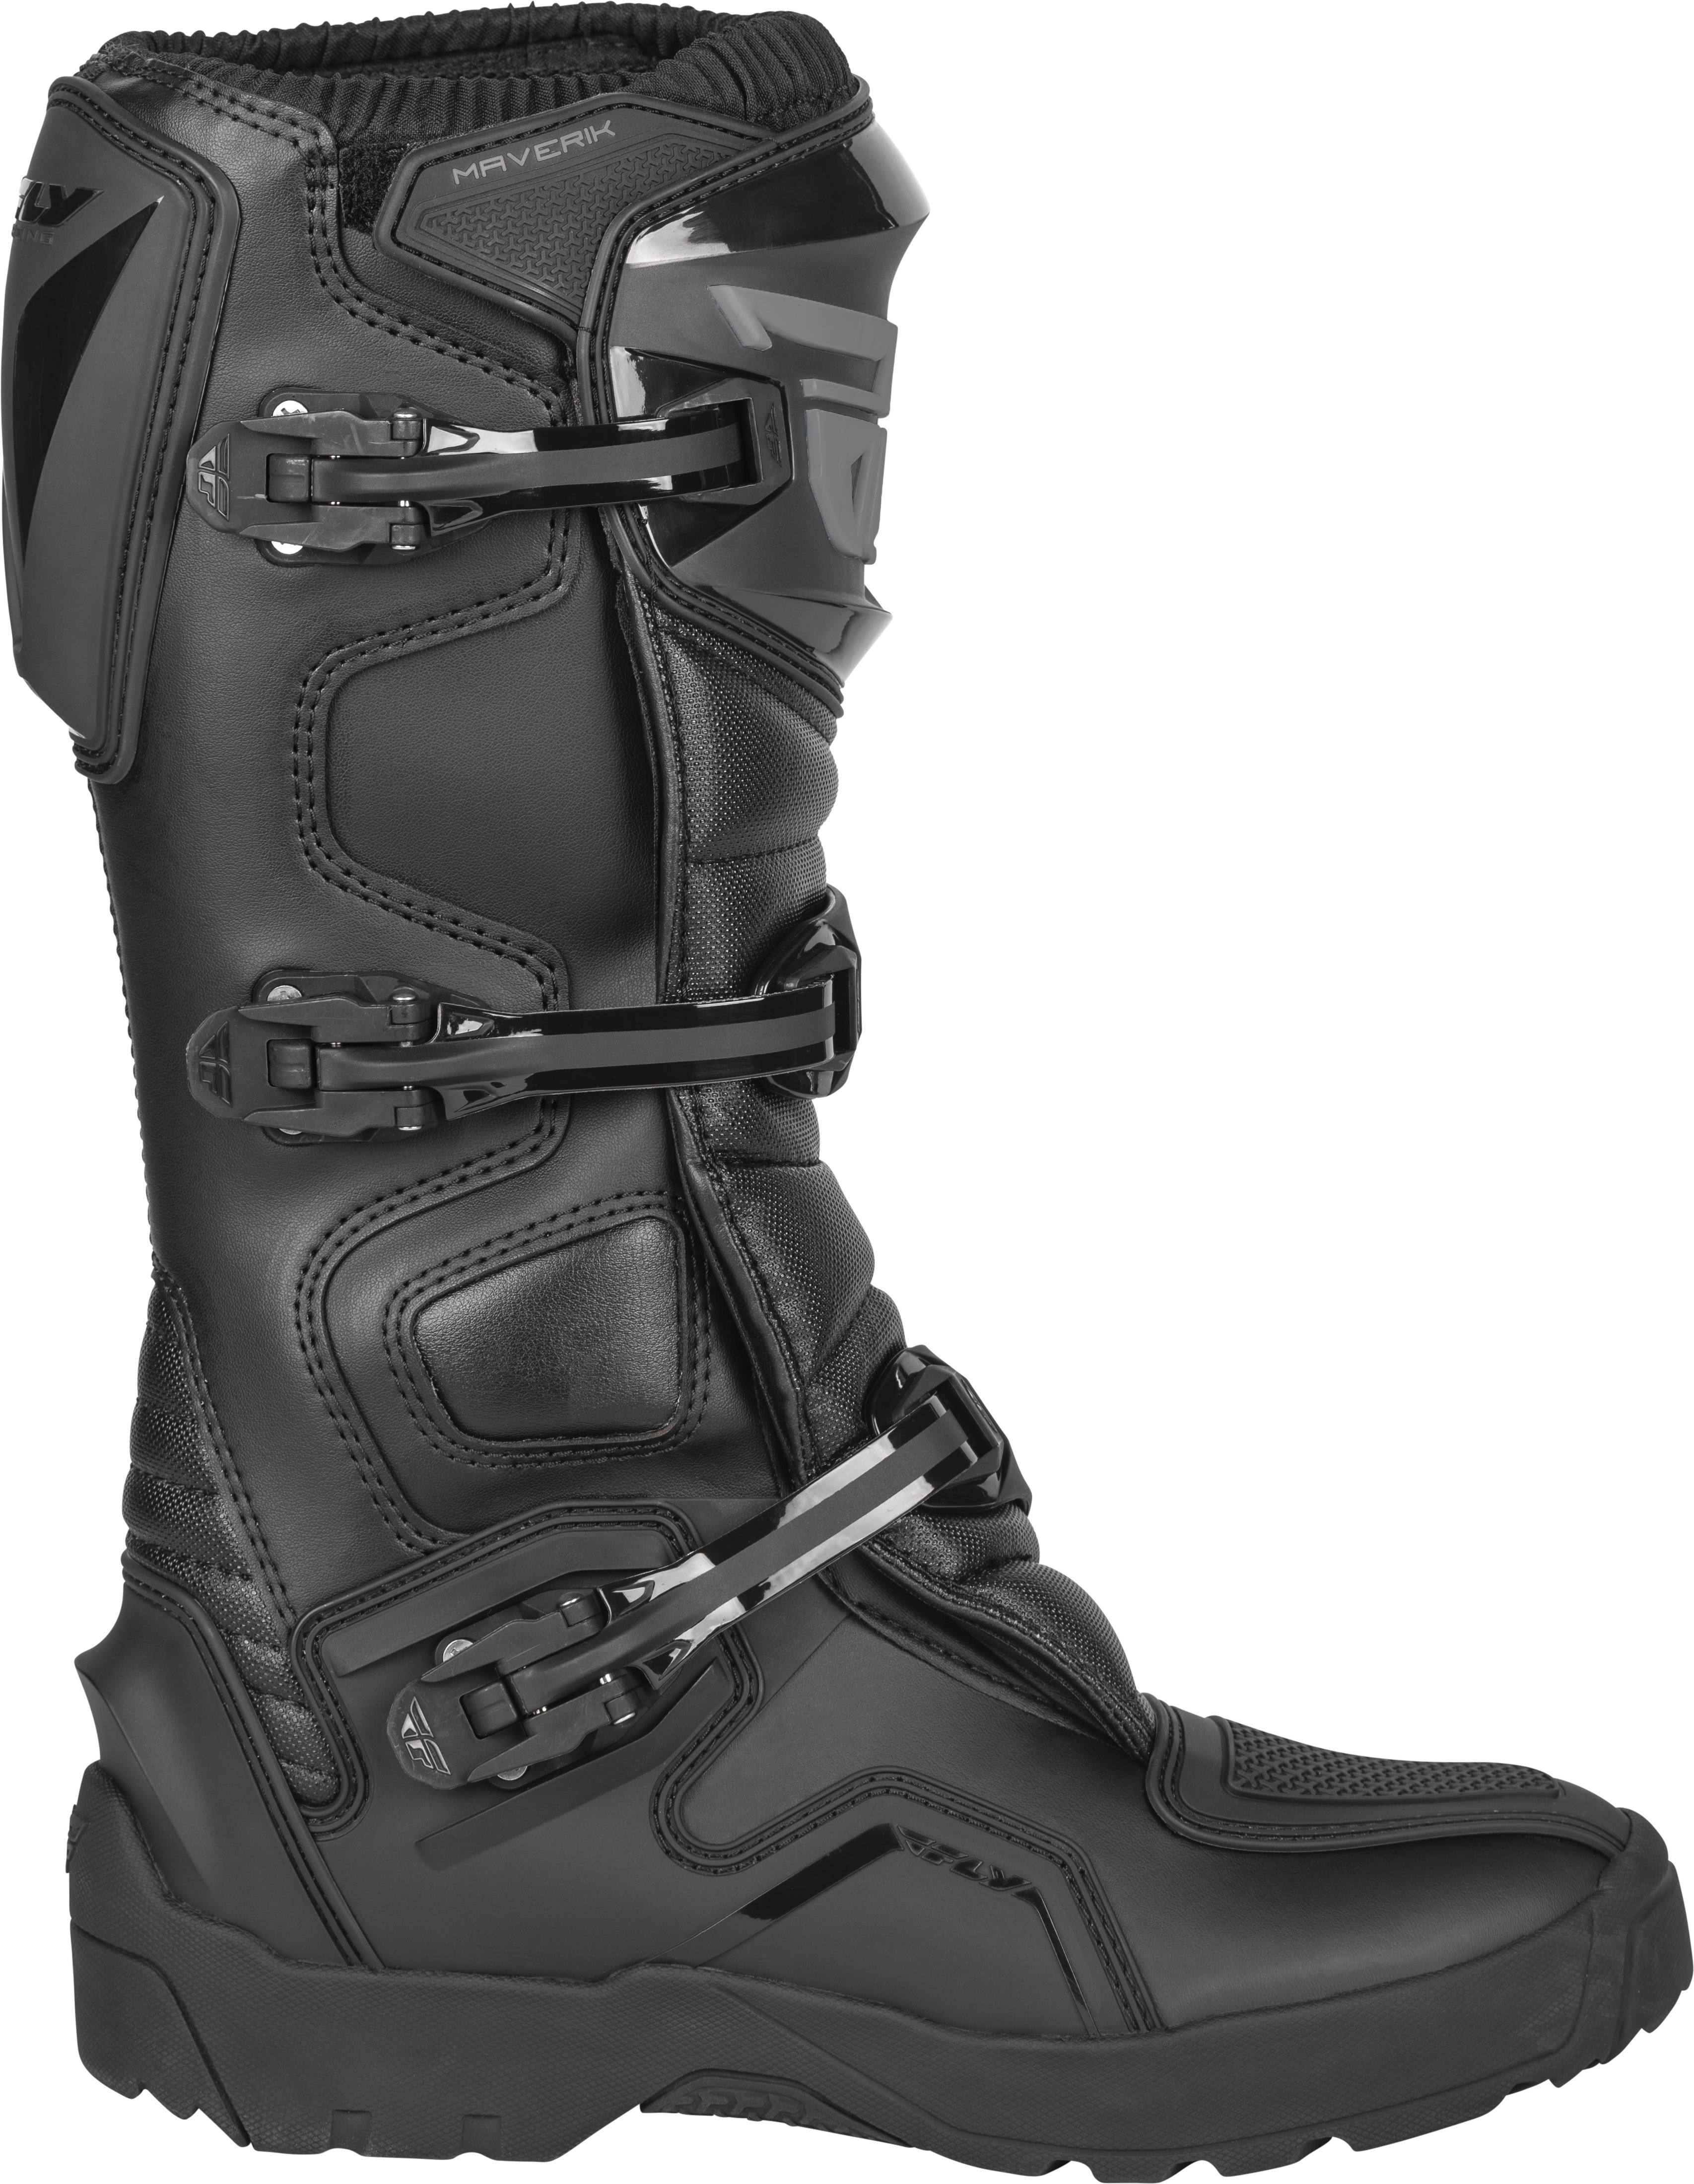 Maverik Enduro Boot Black Size 14 - Click Image to Close